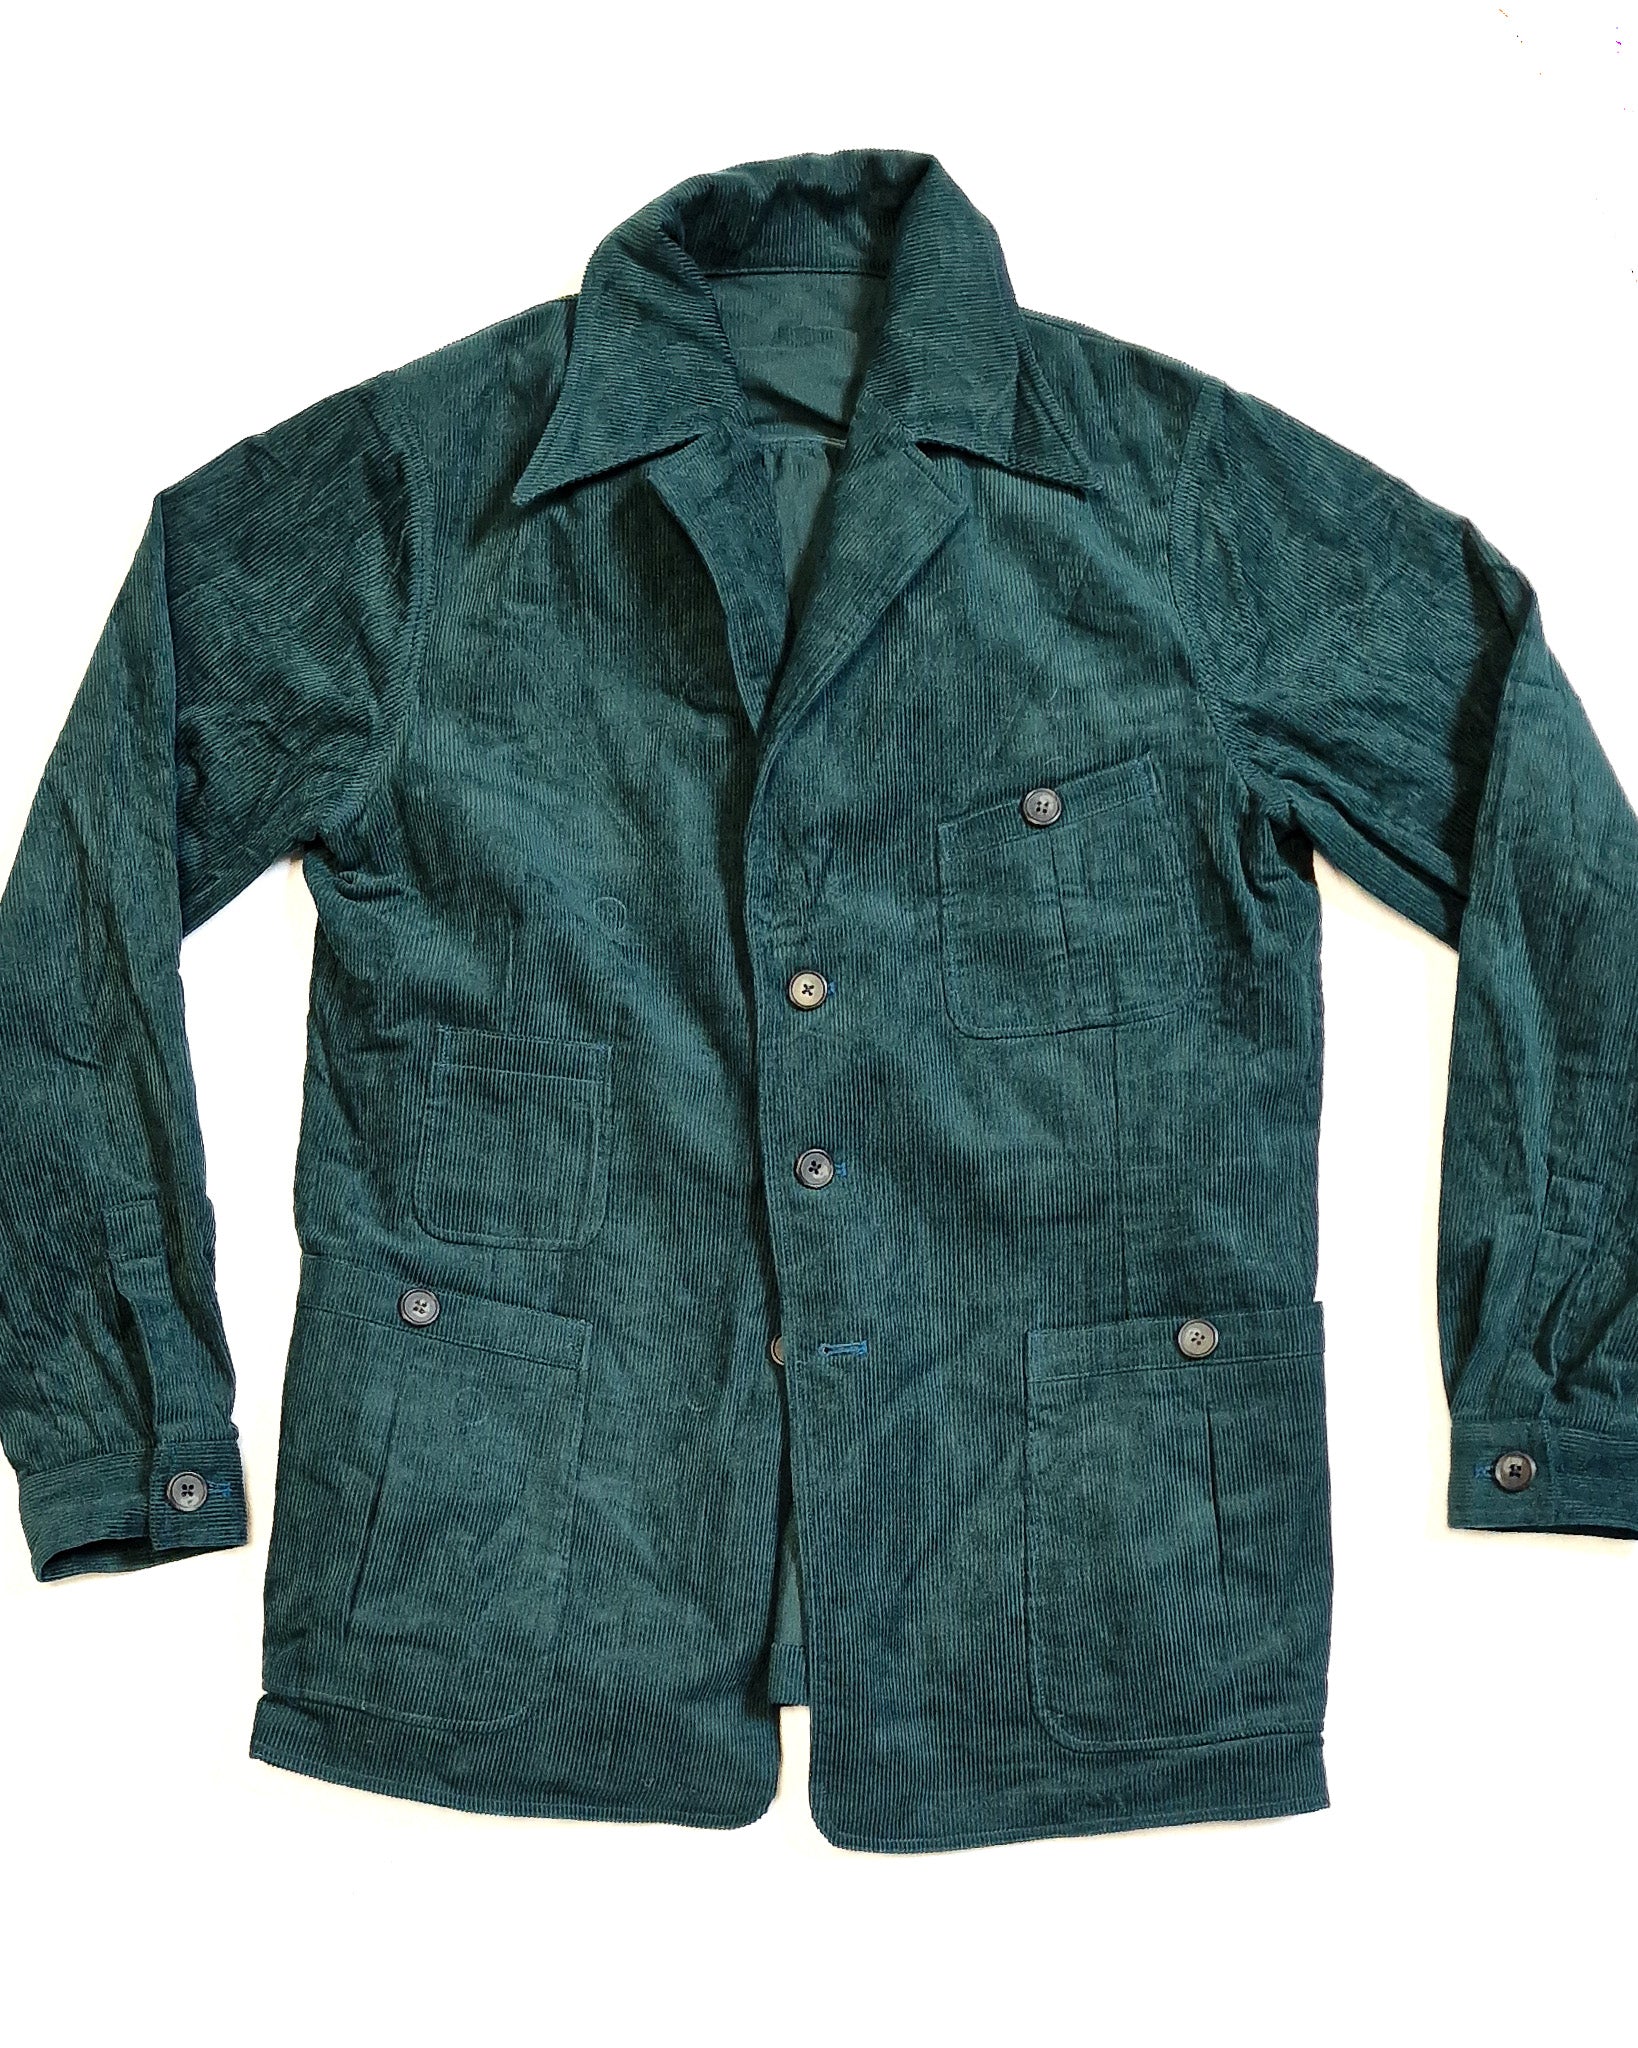 Sample Corduroy Artisan Jacket Size 40